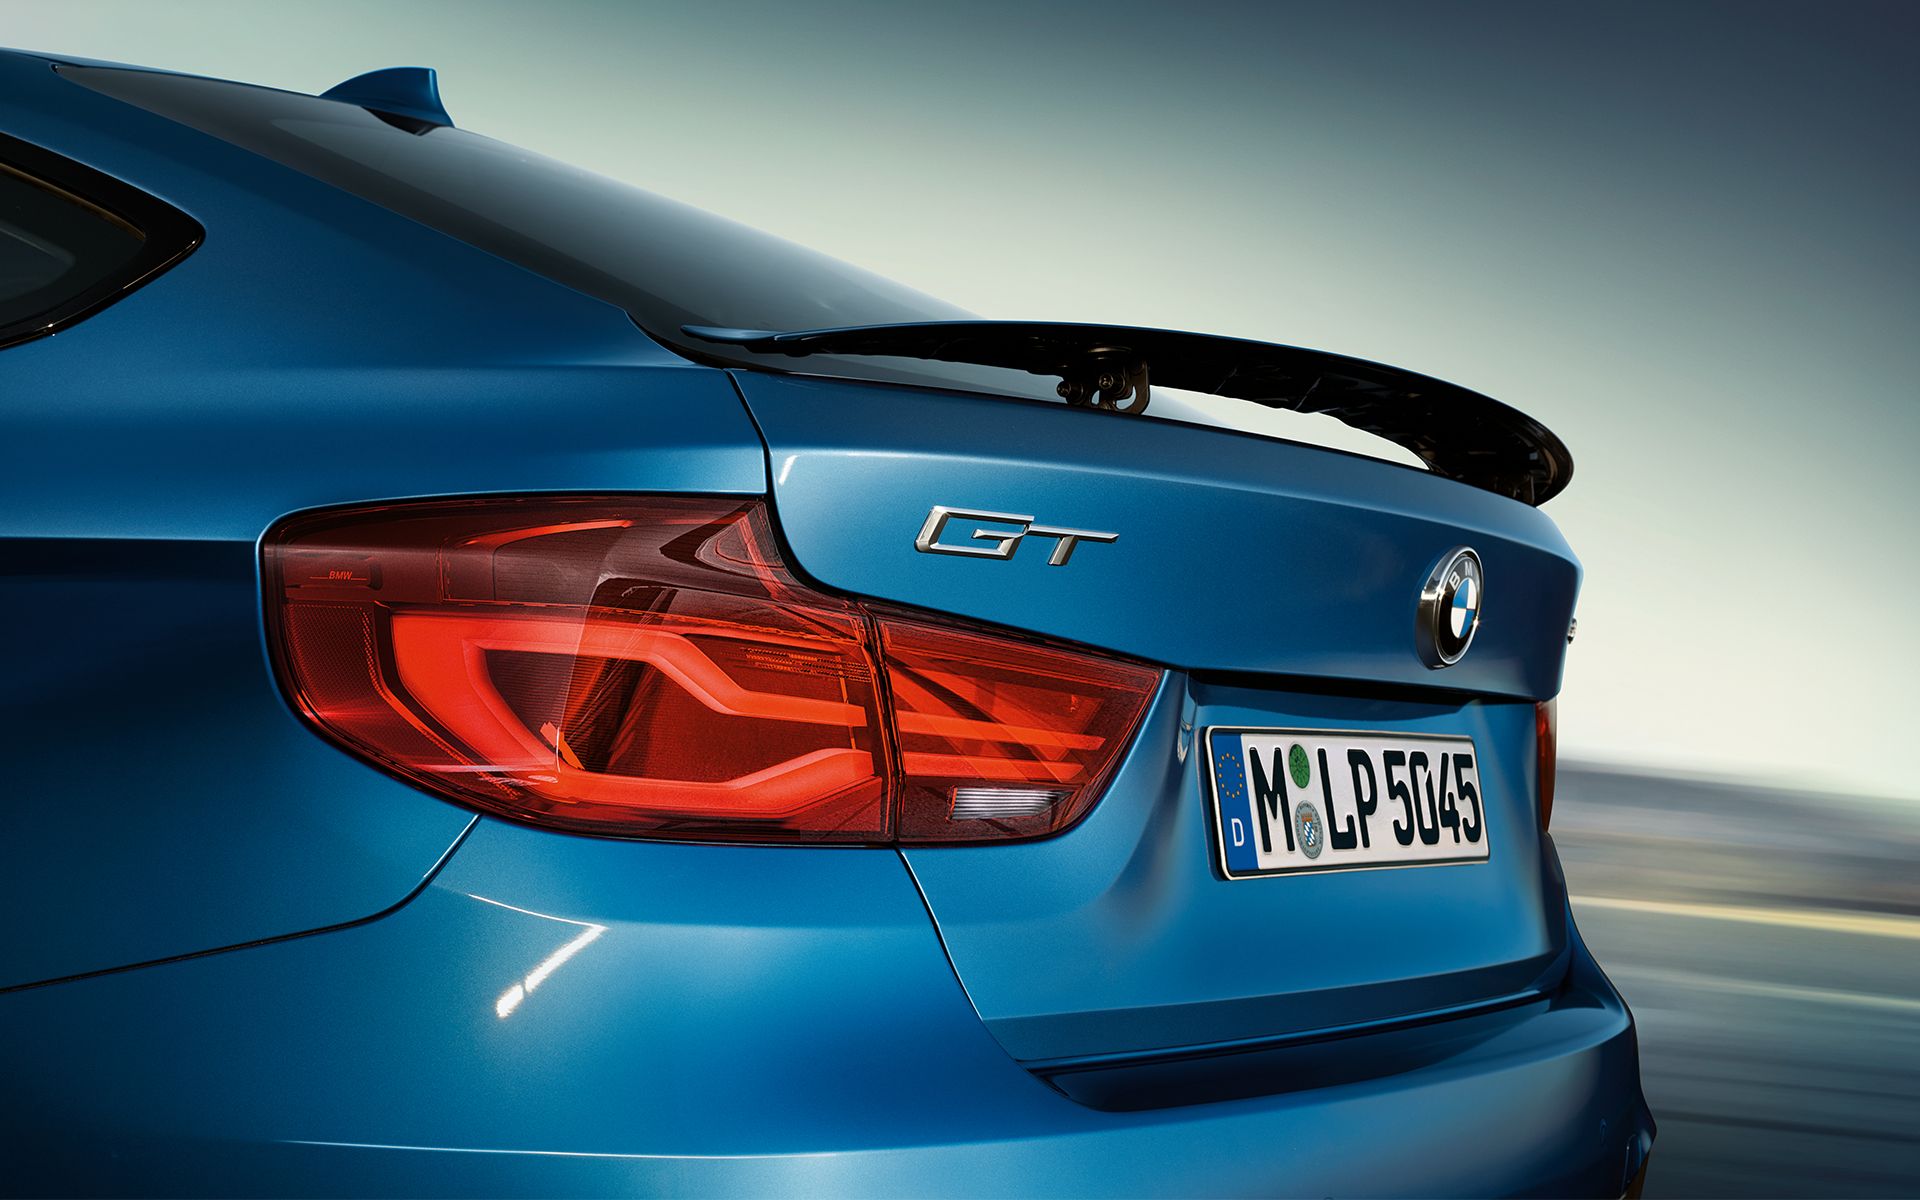 Wallpaper: 2017 BMW 3 Series GT Facelift